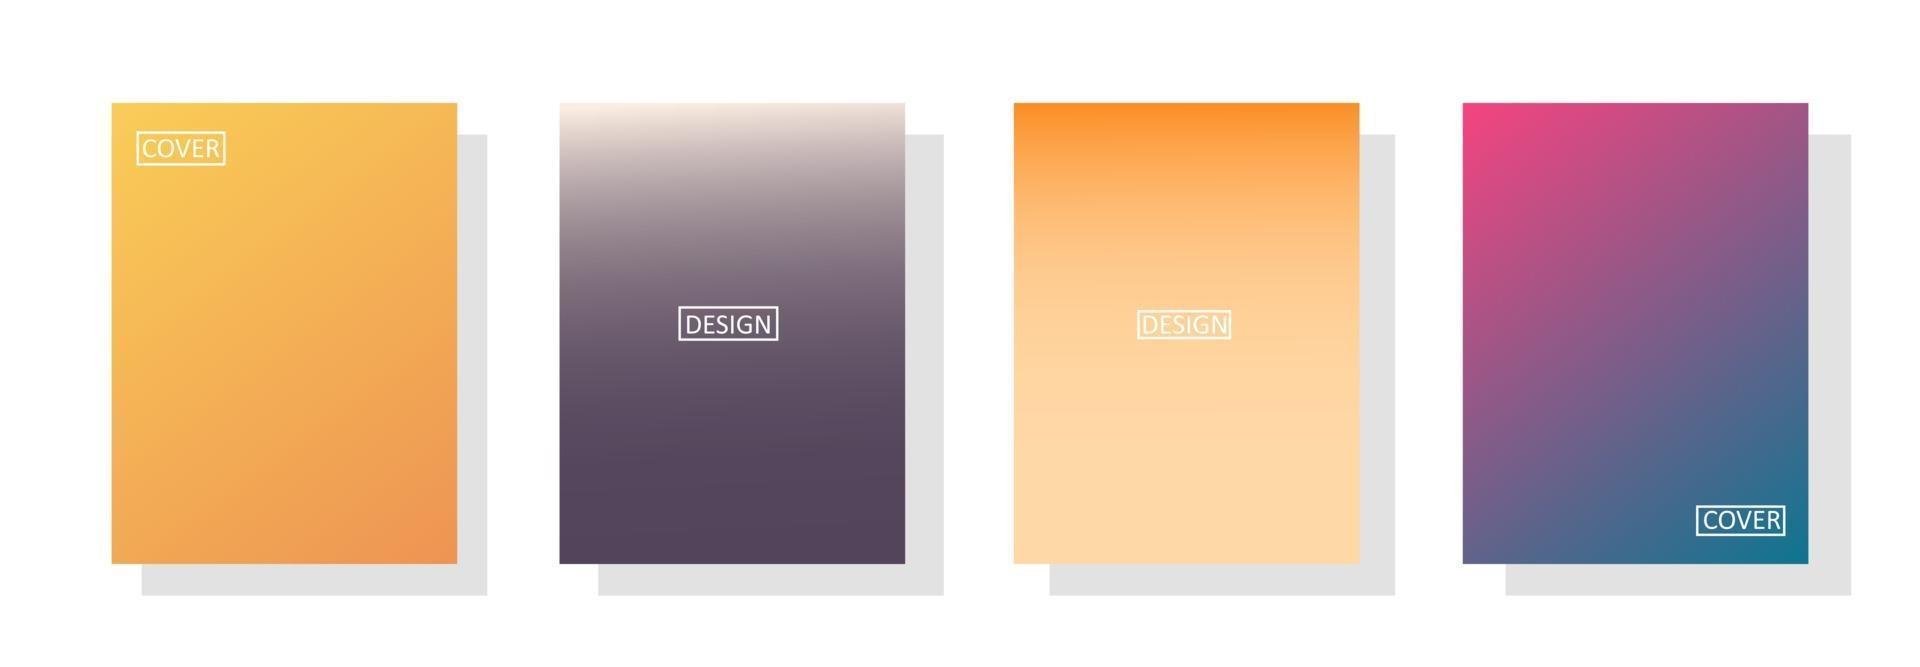 Sammlung schöner bunter Farbverlaufshintergründe für Flyer-Cover vektor